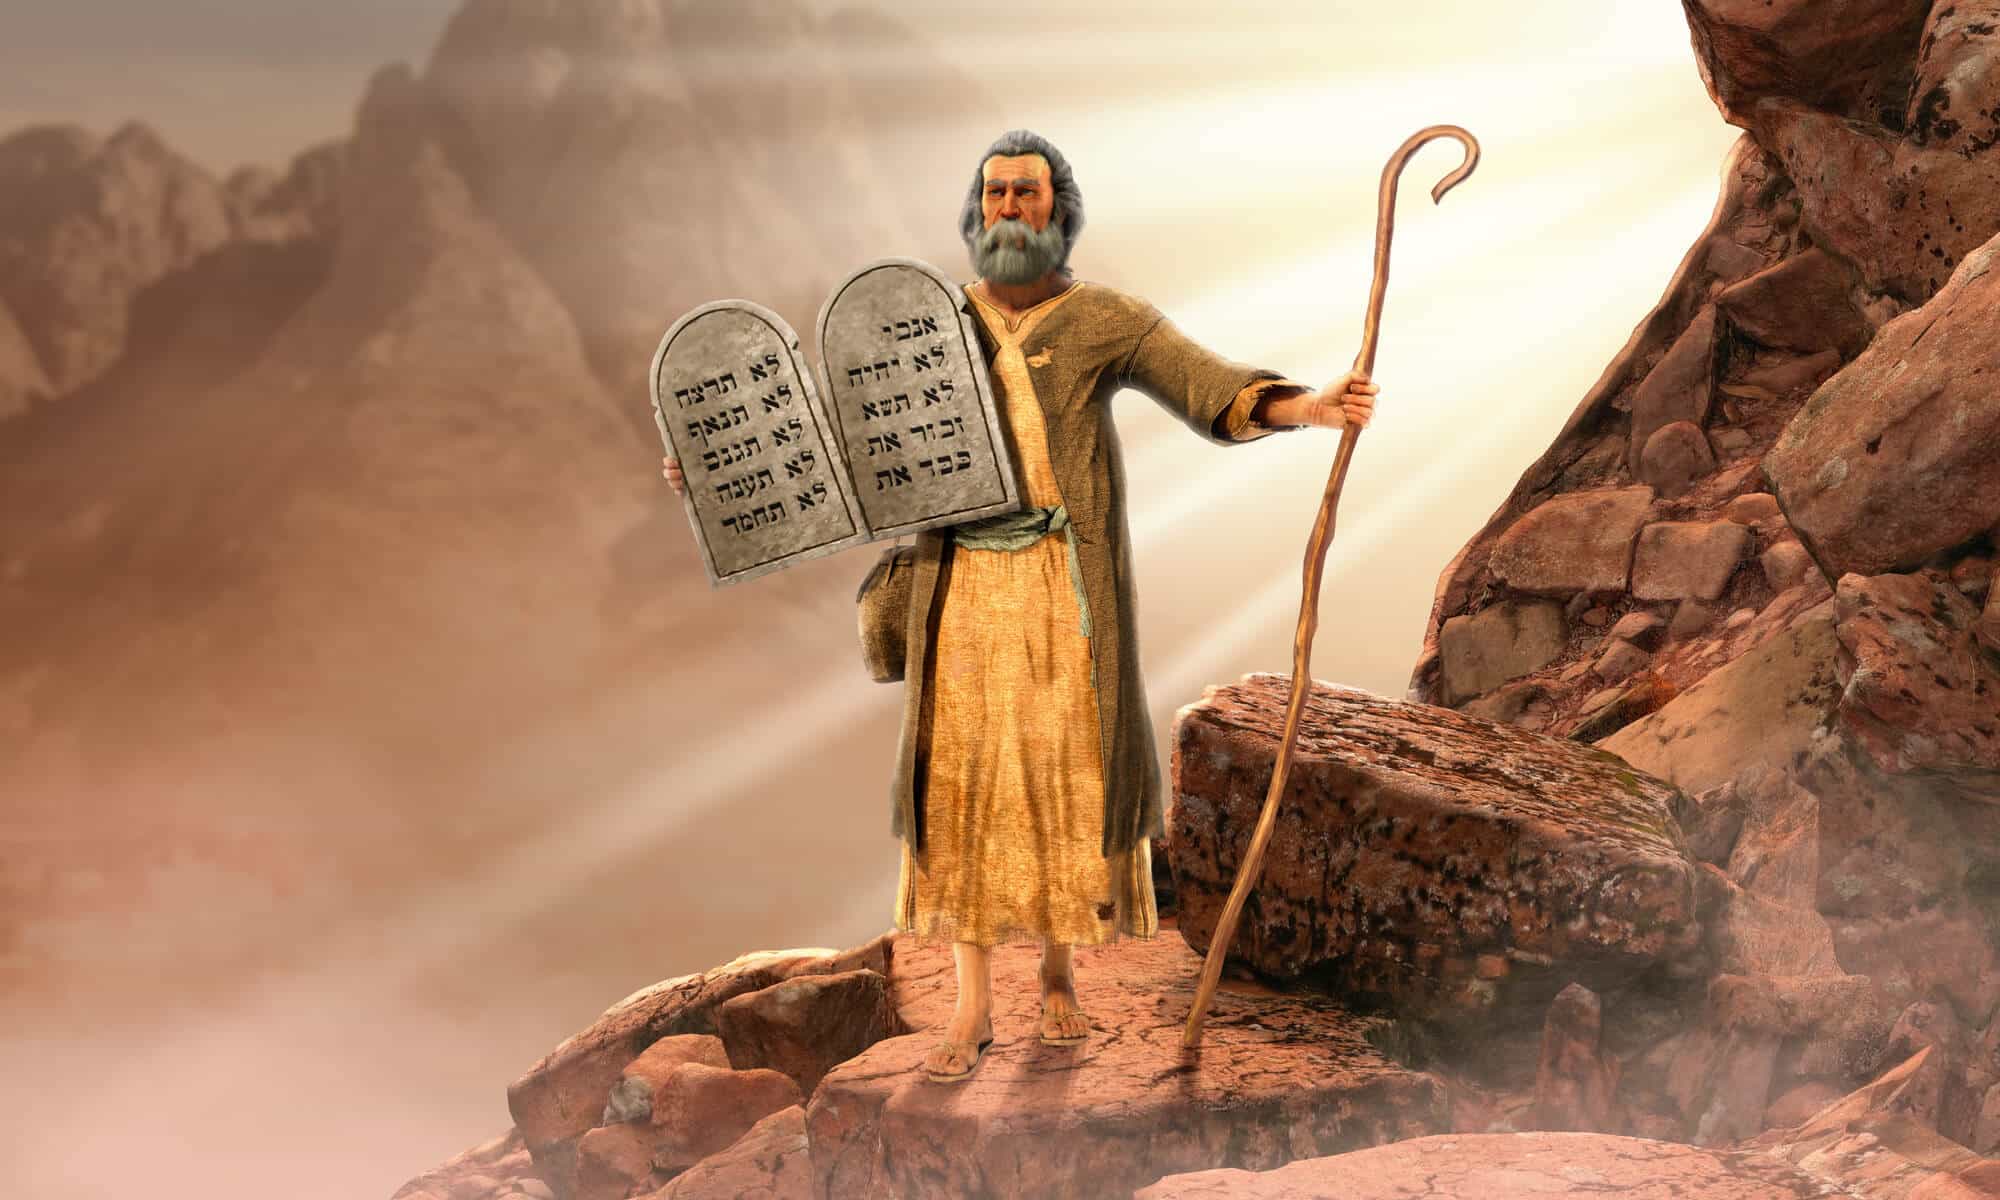 משה מחזיק את הלוחות ועליהם חקוקים עשרת הדברות. משה התגלה ומאומץ על ידי בת פרעה. <a href="https://depositphotos.com. ">המחשה: depositphotos.com</a>